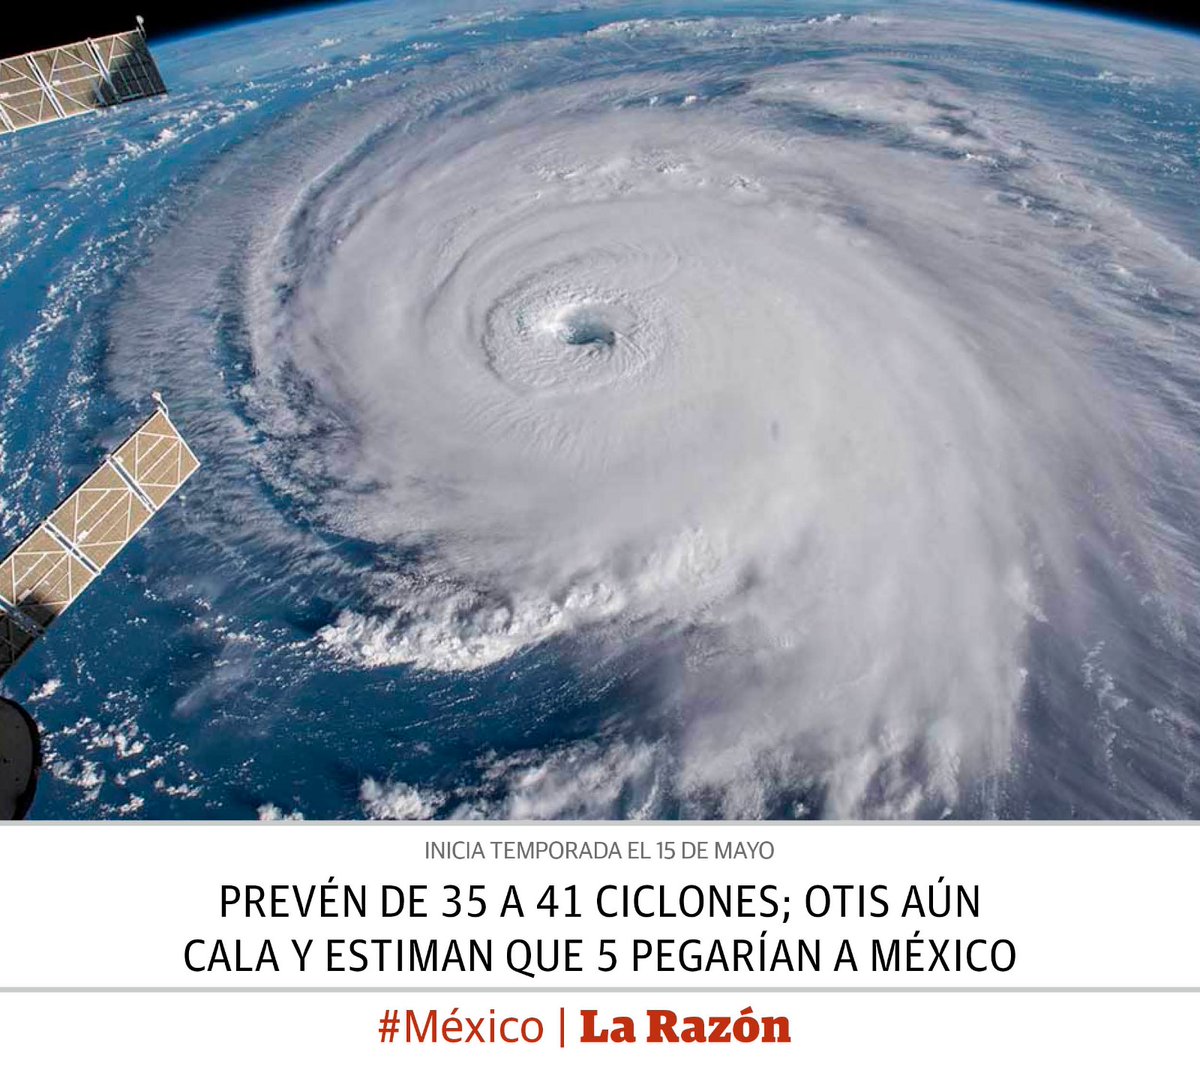 📰 #EnPortada | Prevén de 35 a 41 ciclones; Otis aún cala y estiman que 5 pegarían a México bit.ly/4b5d5AB